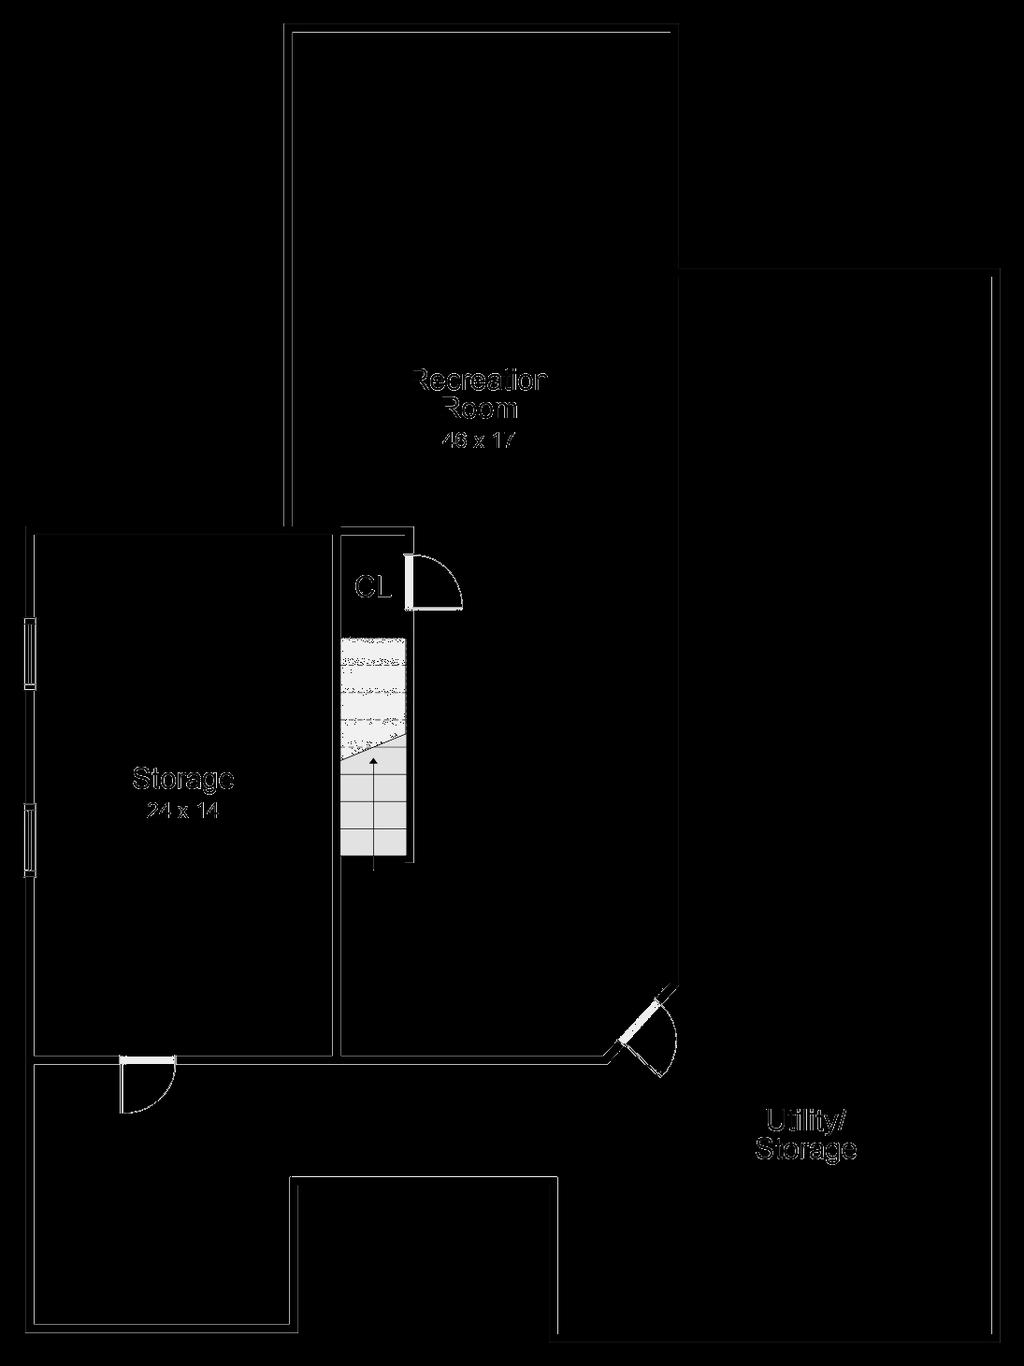 Floor Plans Basement Floor plan for illustration purposes only.